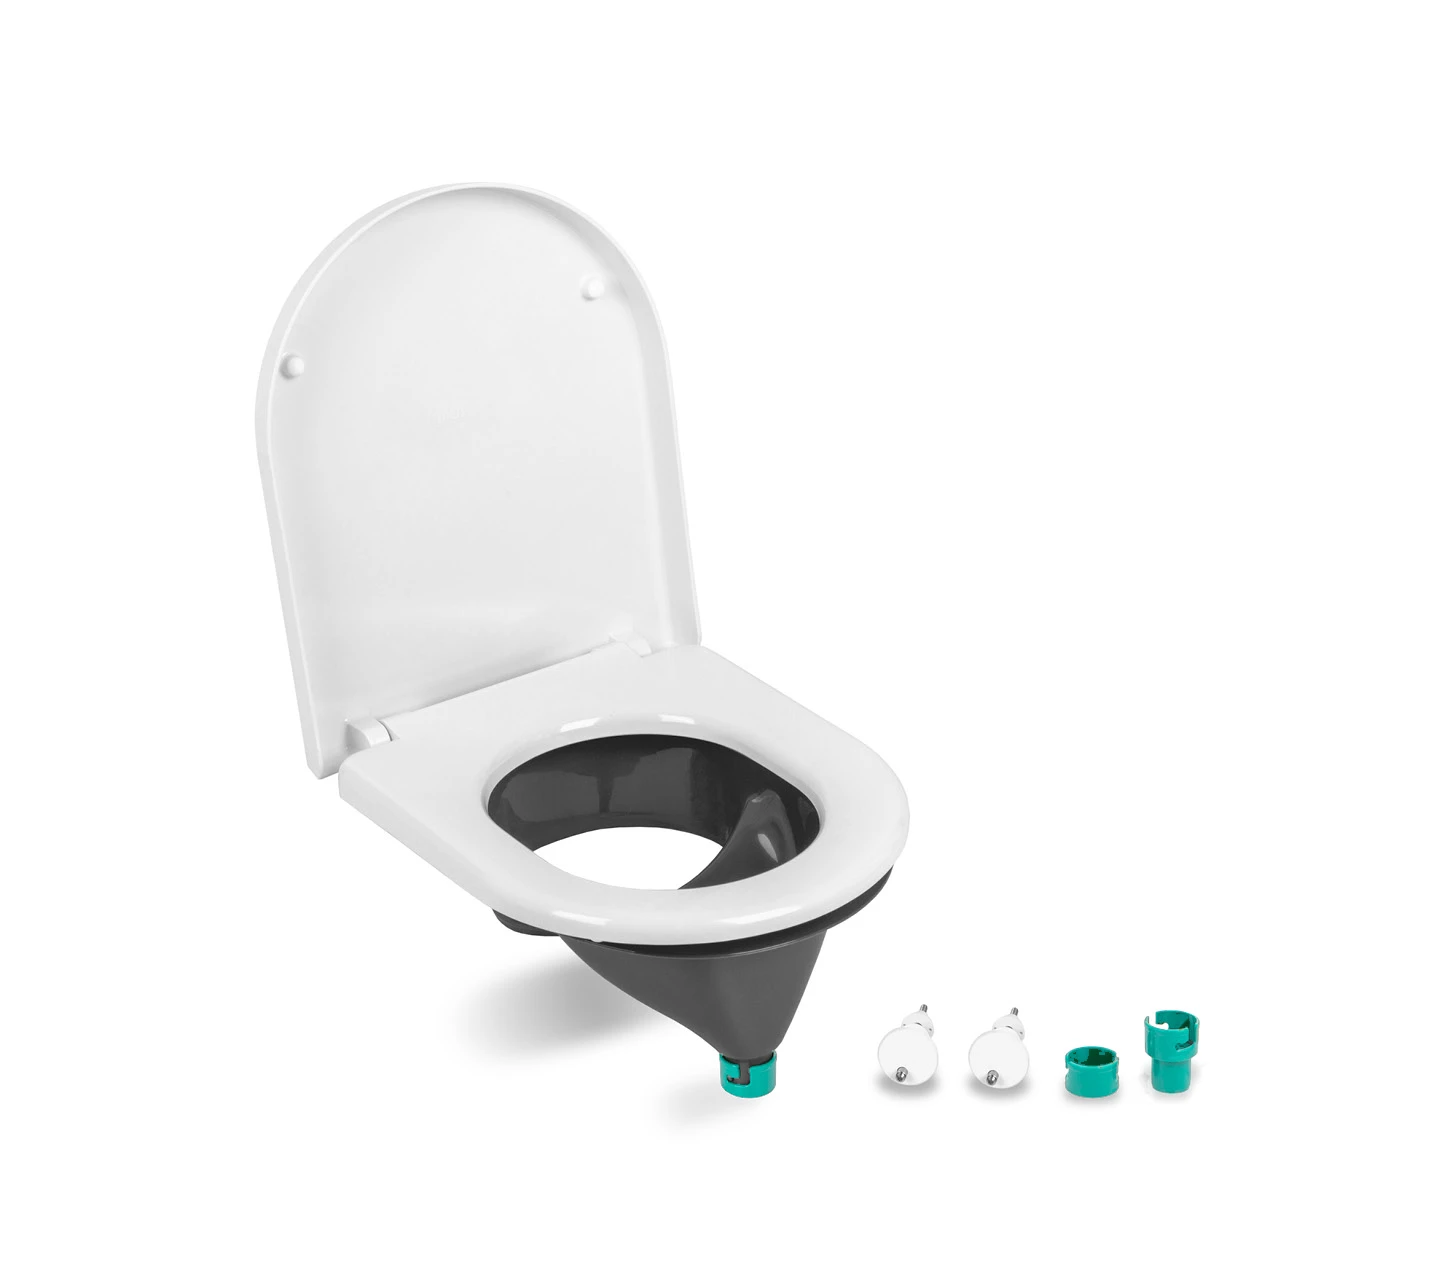 Siège enfant à séparation Separett toilette sèche